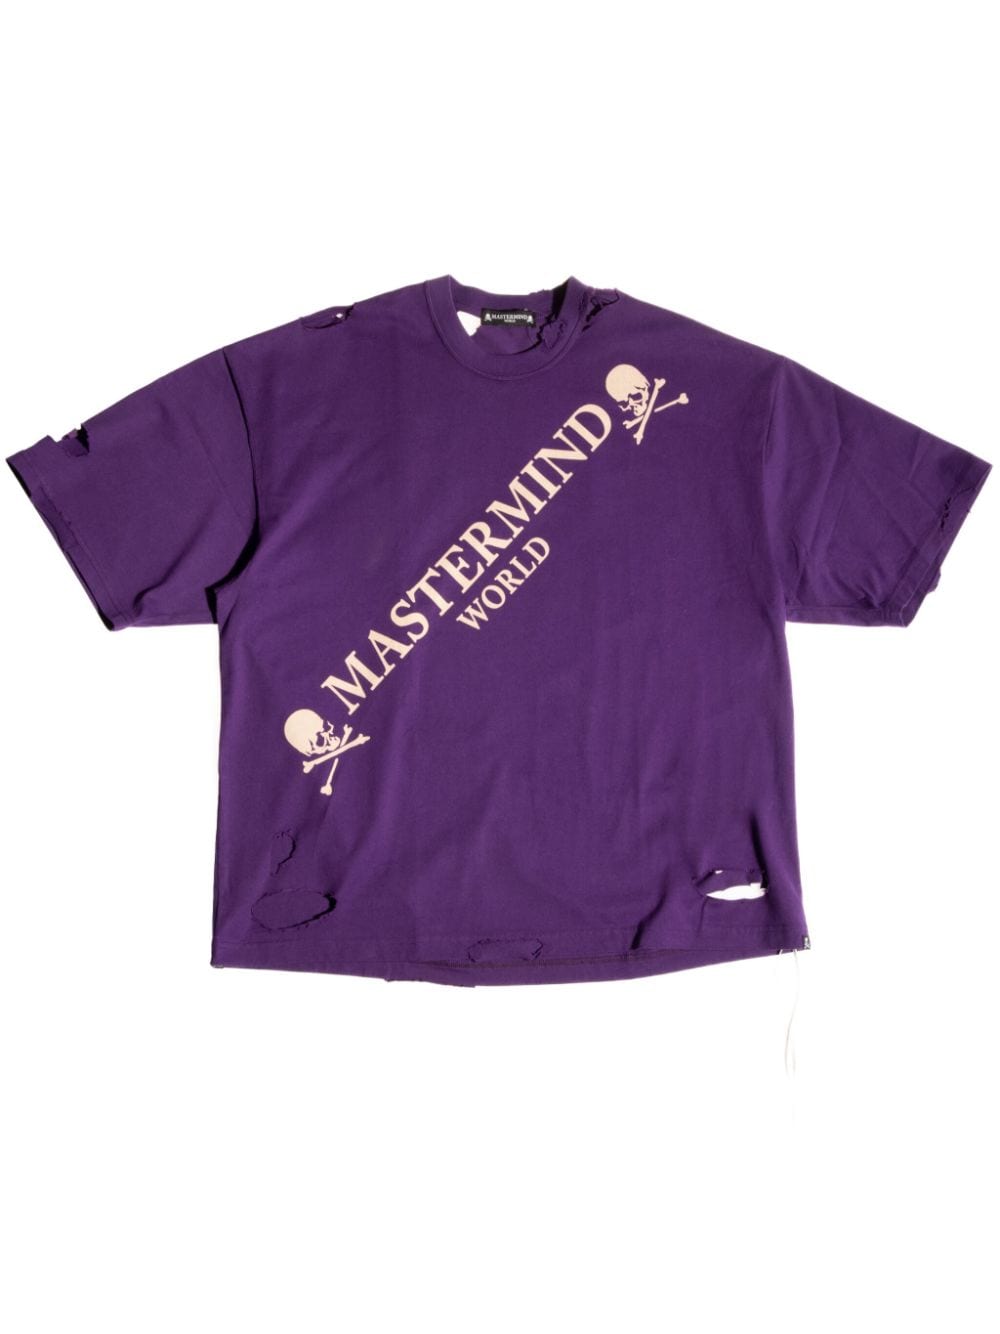 Mastermind World T-Shirt im Distressed-Look - Violett von Mastermind World